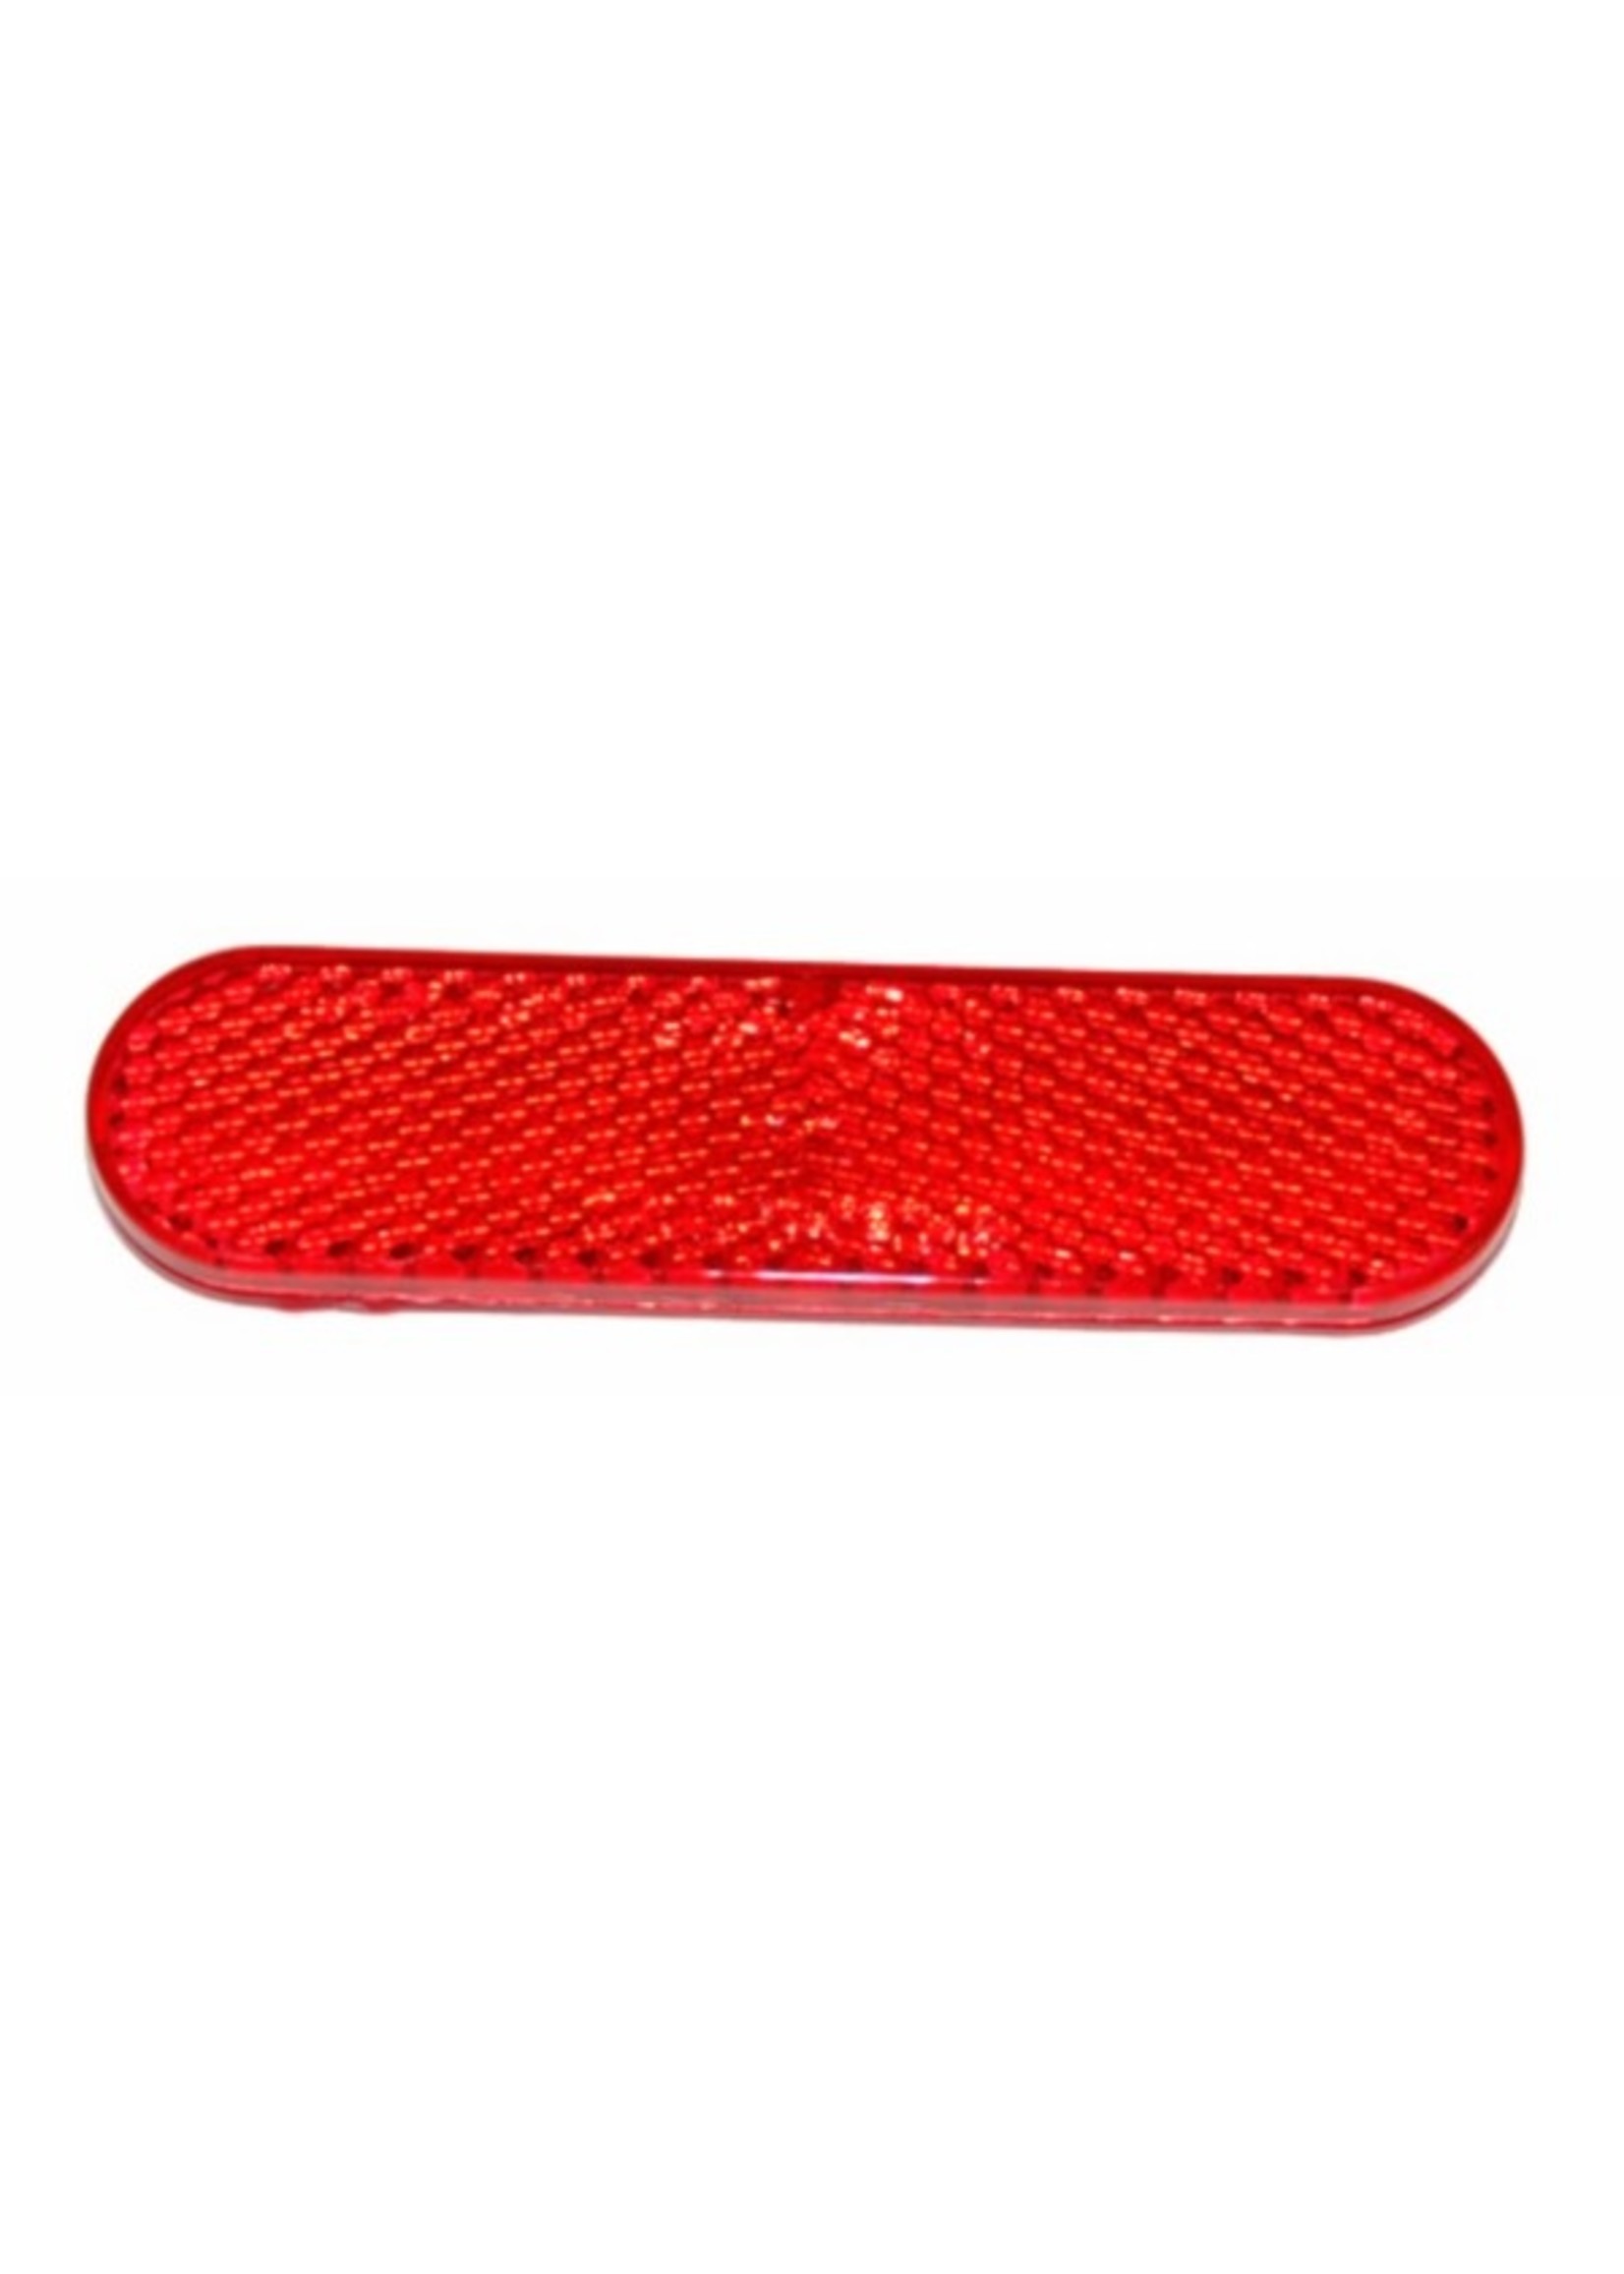 Piaggio reflector achterspatbord rood fly/primav/sprin/vespa s/zip2000 piag orig 58233r